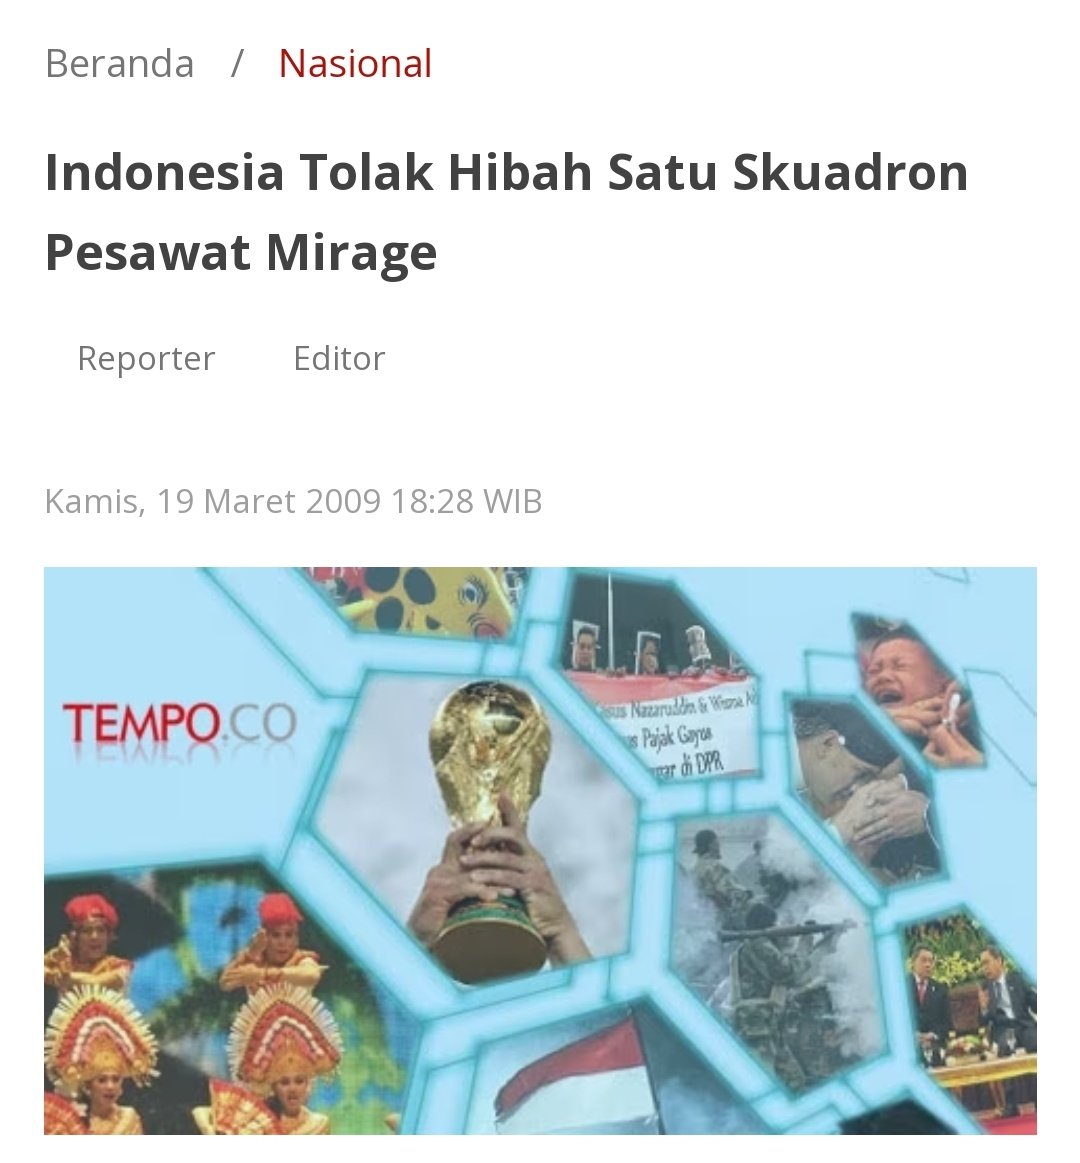 Pendukung Prabowo pernah berpikir nggak, 'Kenapa pesawat yang mau dihibahkan justru dibeli sama Prabowo'. Padahal tahun 2009 Menteri Pertahanan Juwono Sudarsono menolak hibah pesawat Mirage 2000 dari Qatar dengan alasan mahalnya biaya perawatan dan sulitnya suku cadang. Kalo